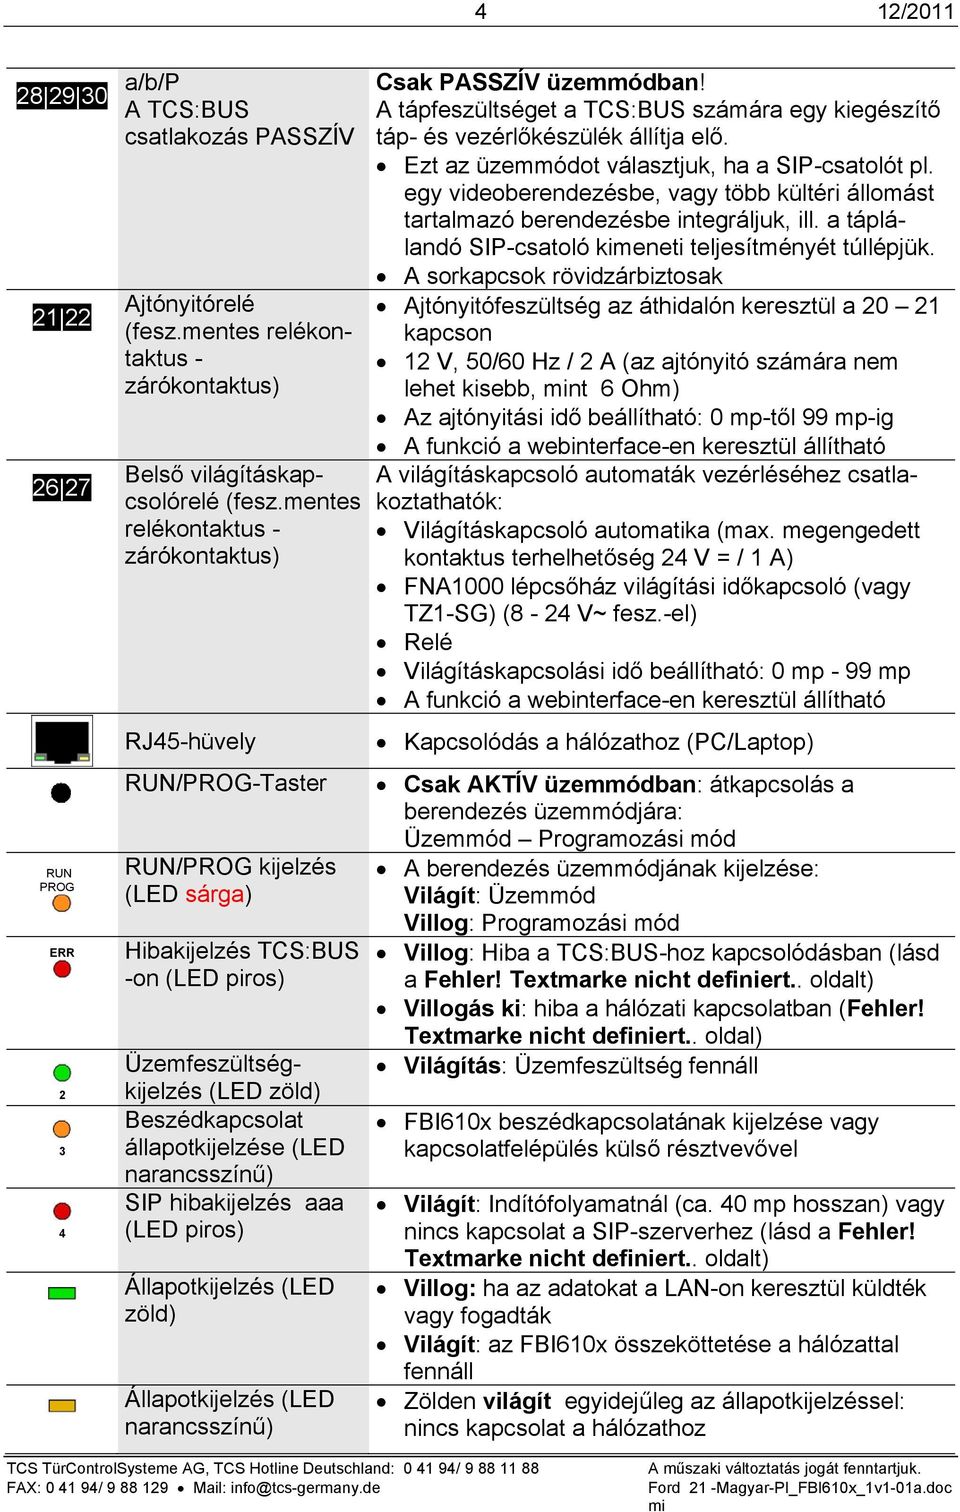 (LED narancsszínű) SIP hibakijelzés aaa (LED piros) Állapotkijelzés (LED zöld) Állapotkijelzés (LED narancsszínű) Csak PASSZÍV üzemmódban A tápfeszültséget a TCS:BUS számára egy kiegészítő táp- és